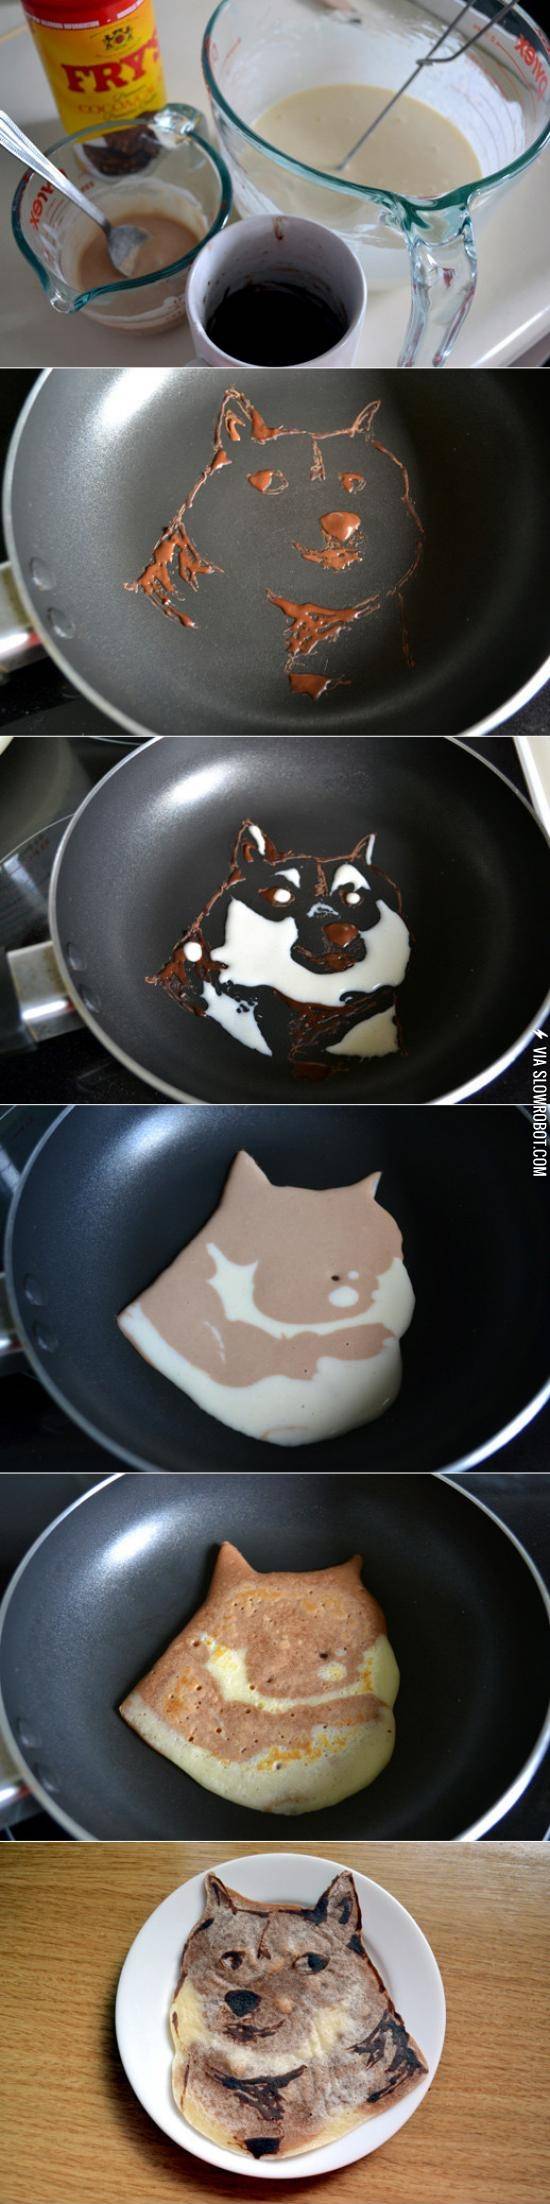 Such+pancake.+Much+wow.